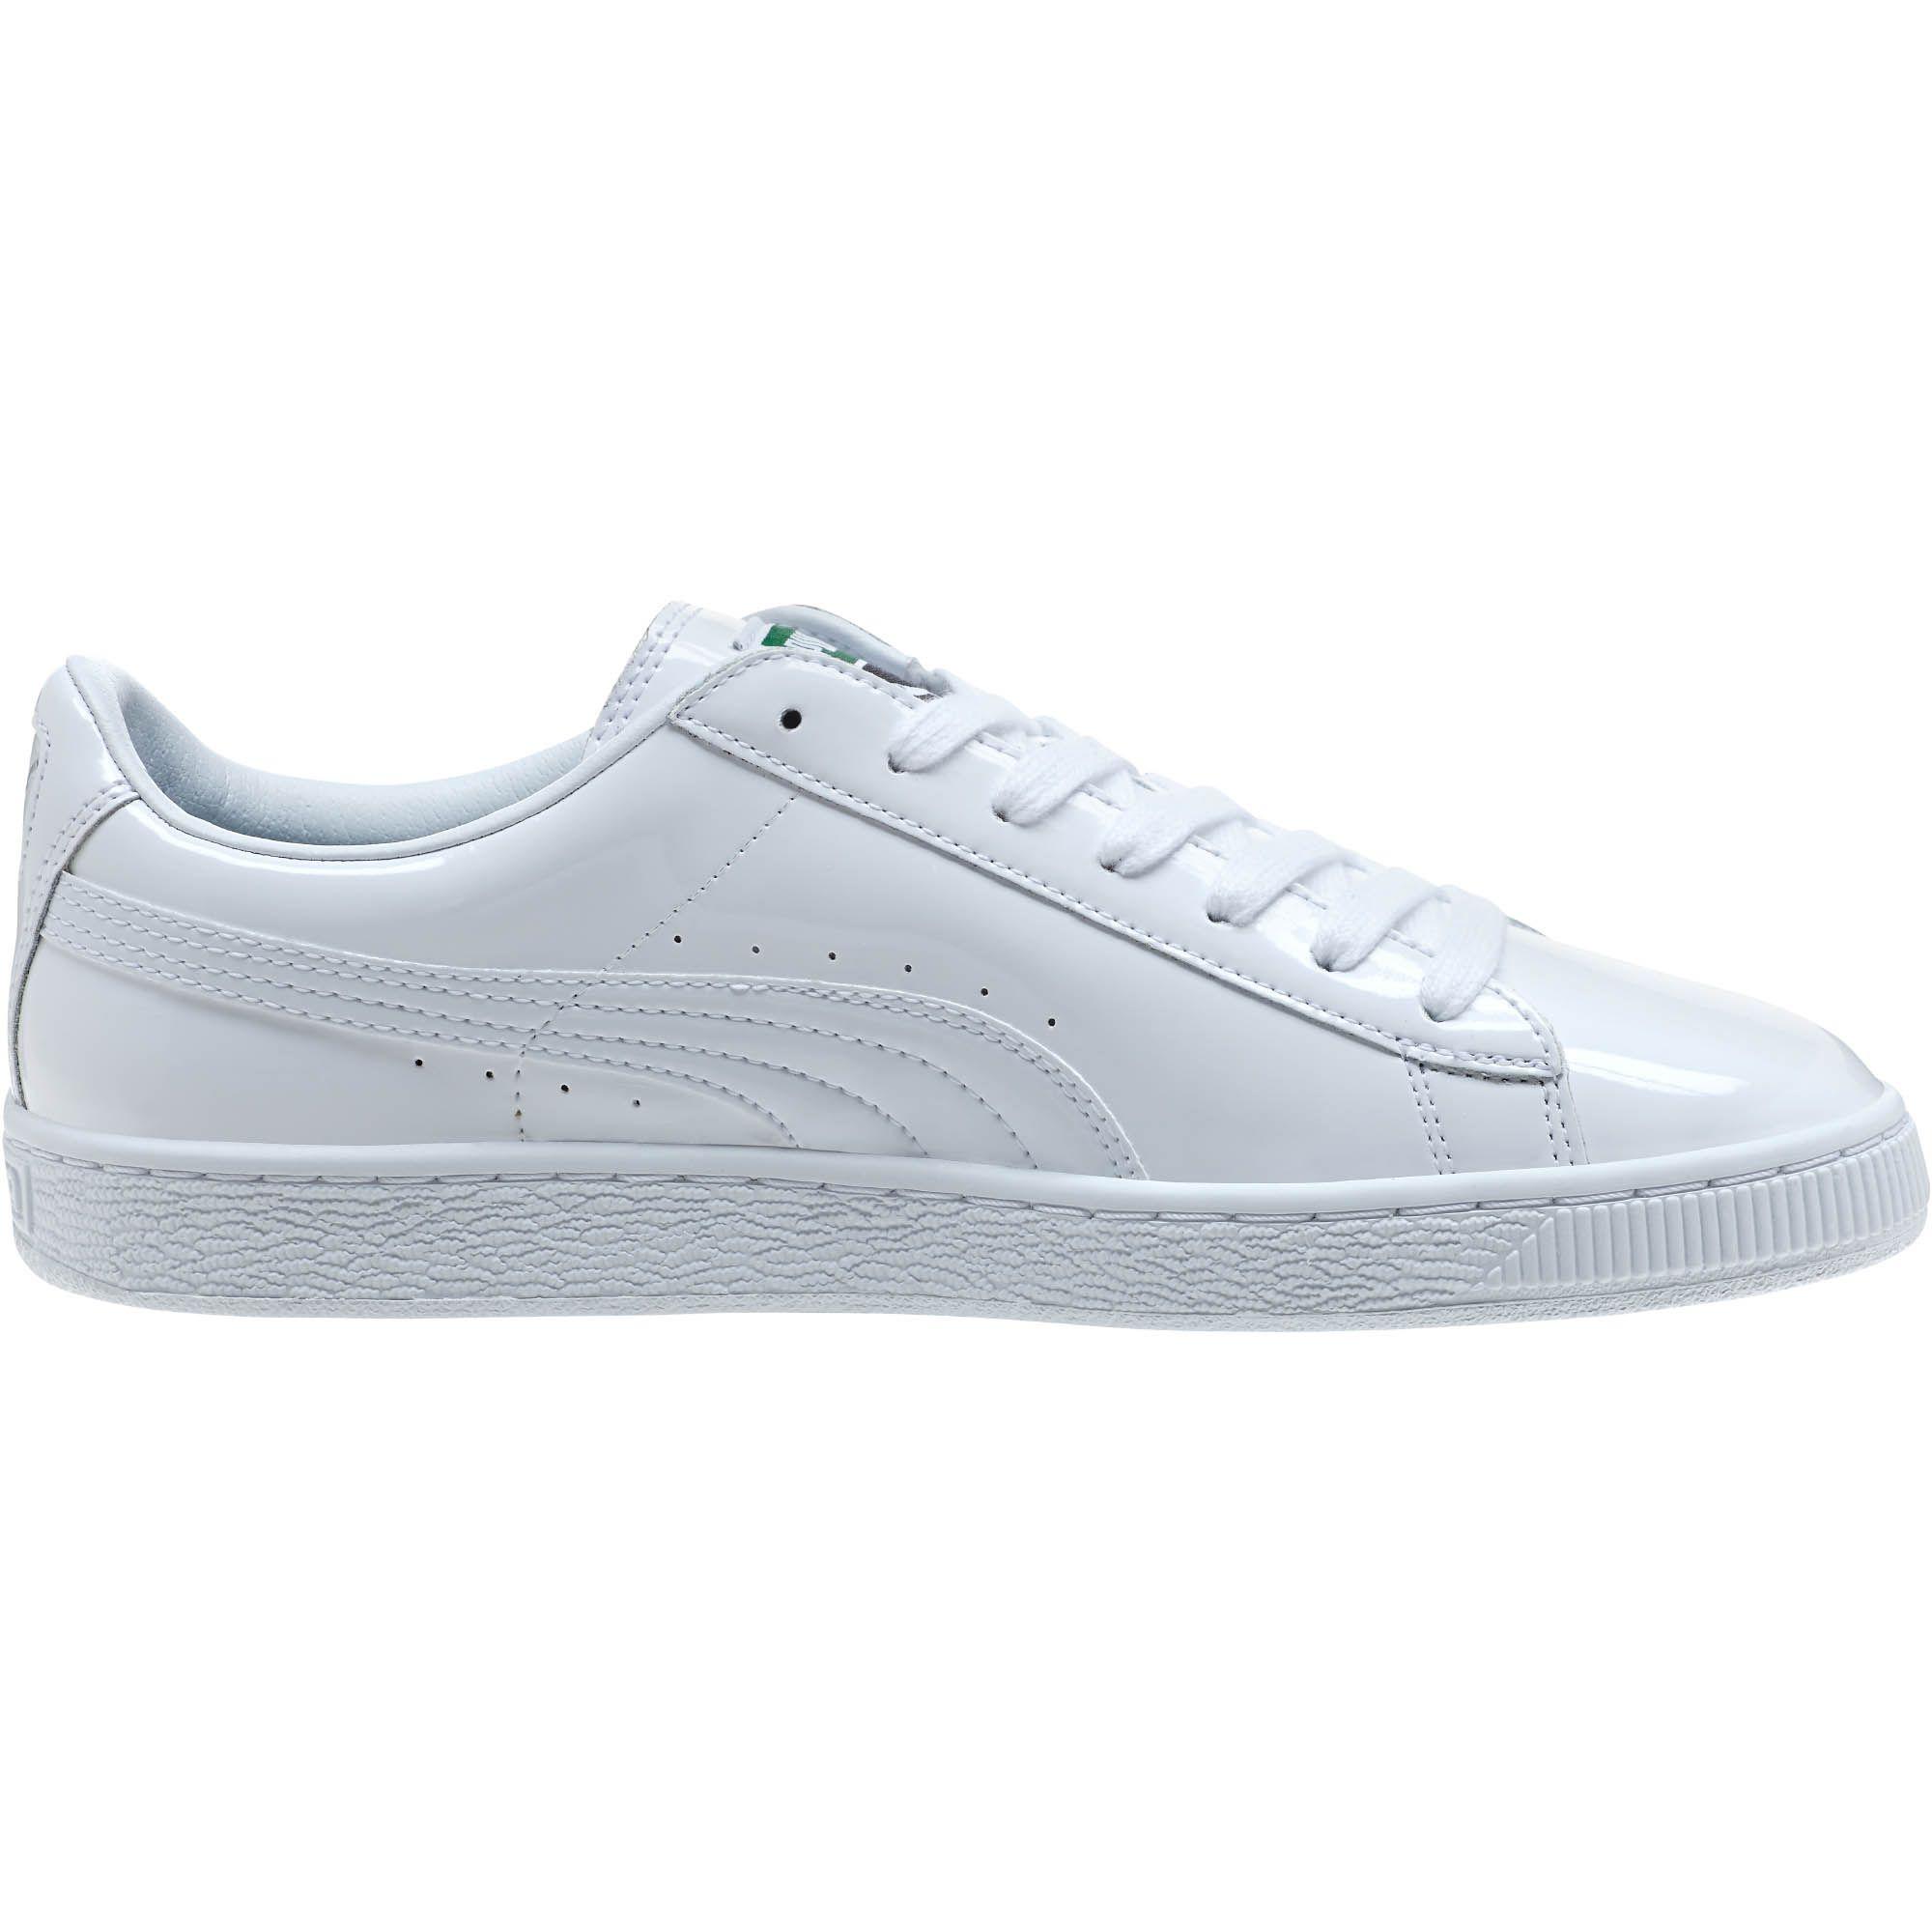 PUMA Leather Basket Matte & Shine Men's Sneakers in White-White (White ...